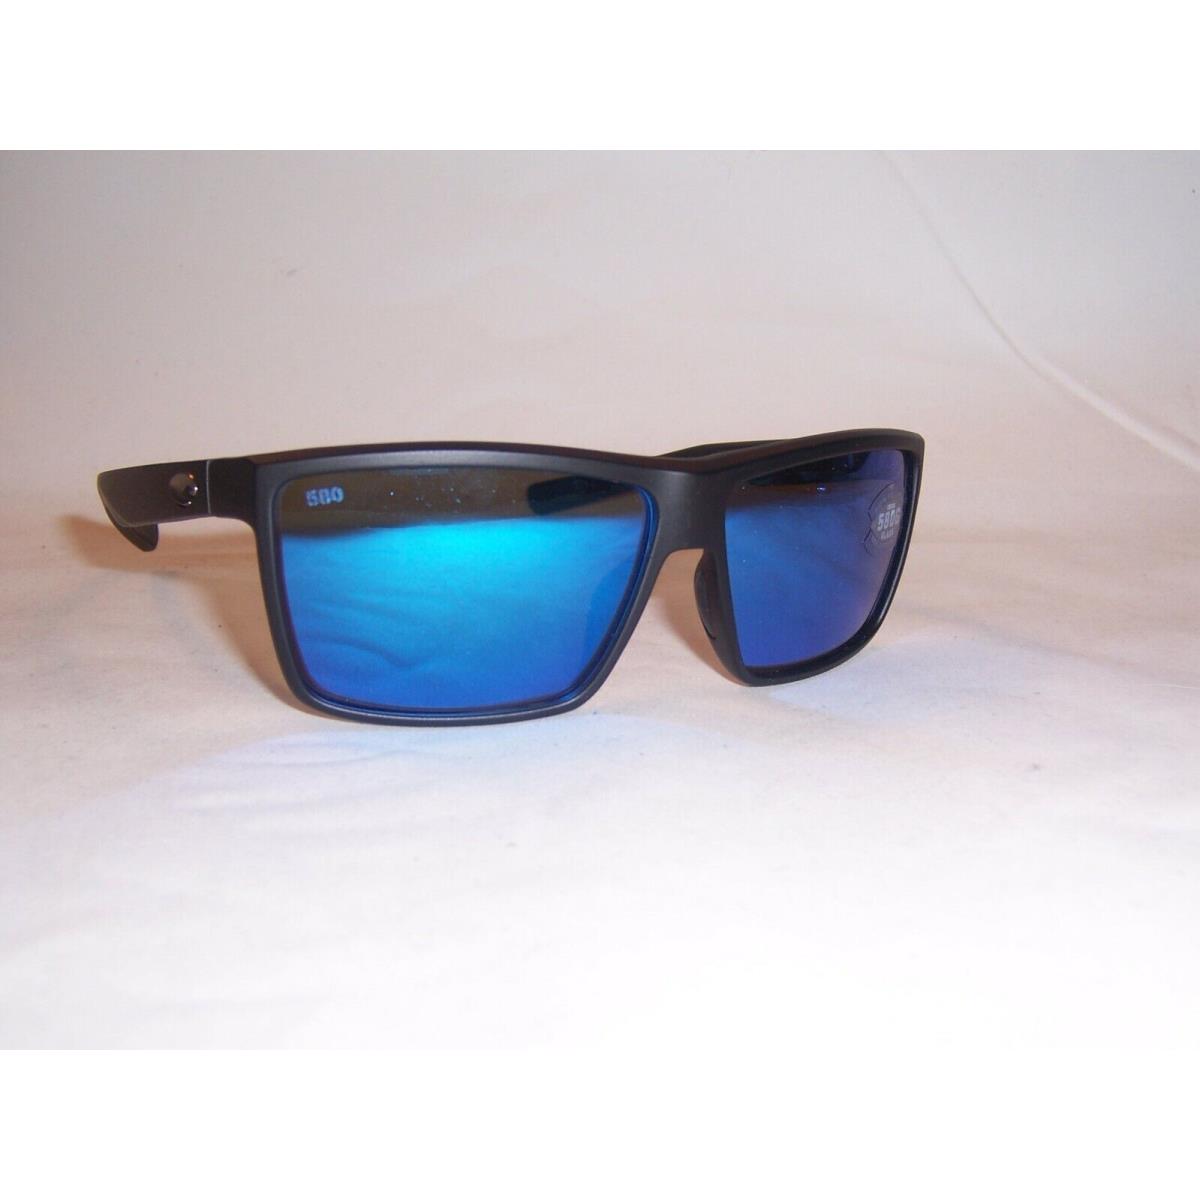 Costa Del Mar Sunglasses Rinconcito Black/blue Mirror 580G Polarized 259